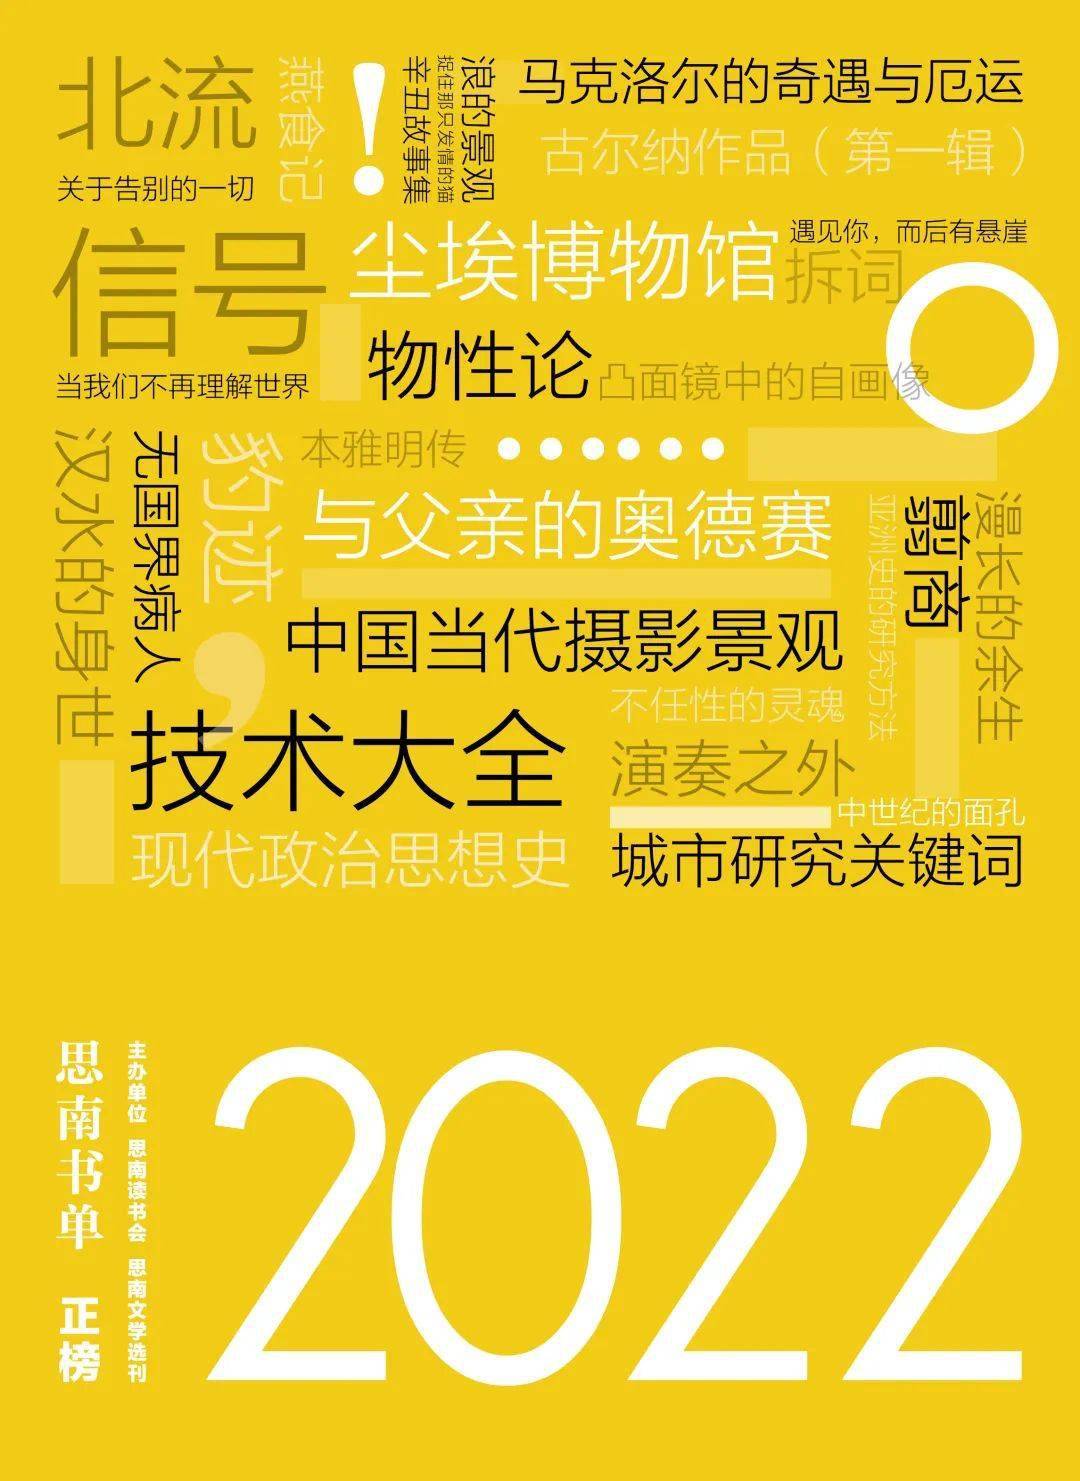 年终书单| “思南书单·2022”正式发布：正榜、评委特别推荐榜、提名作品